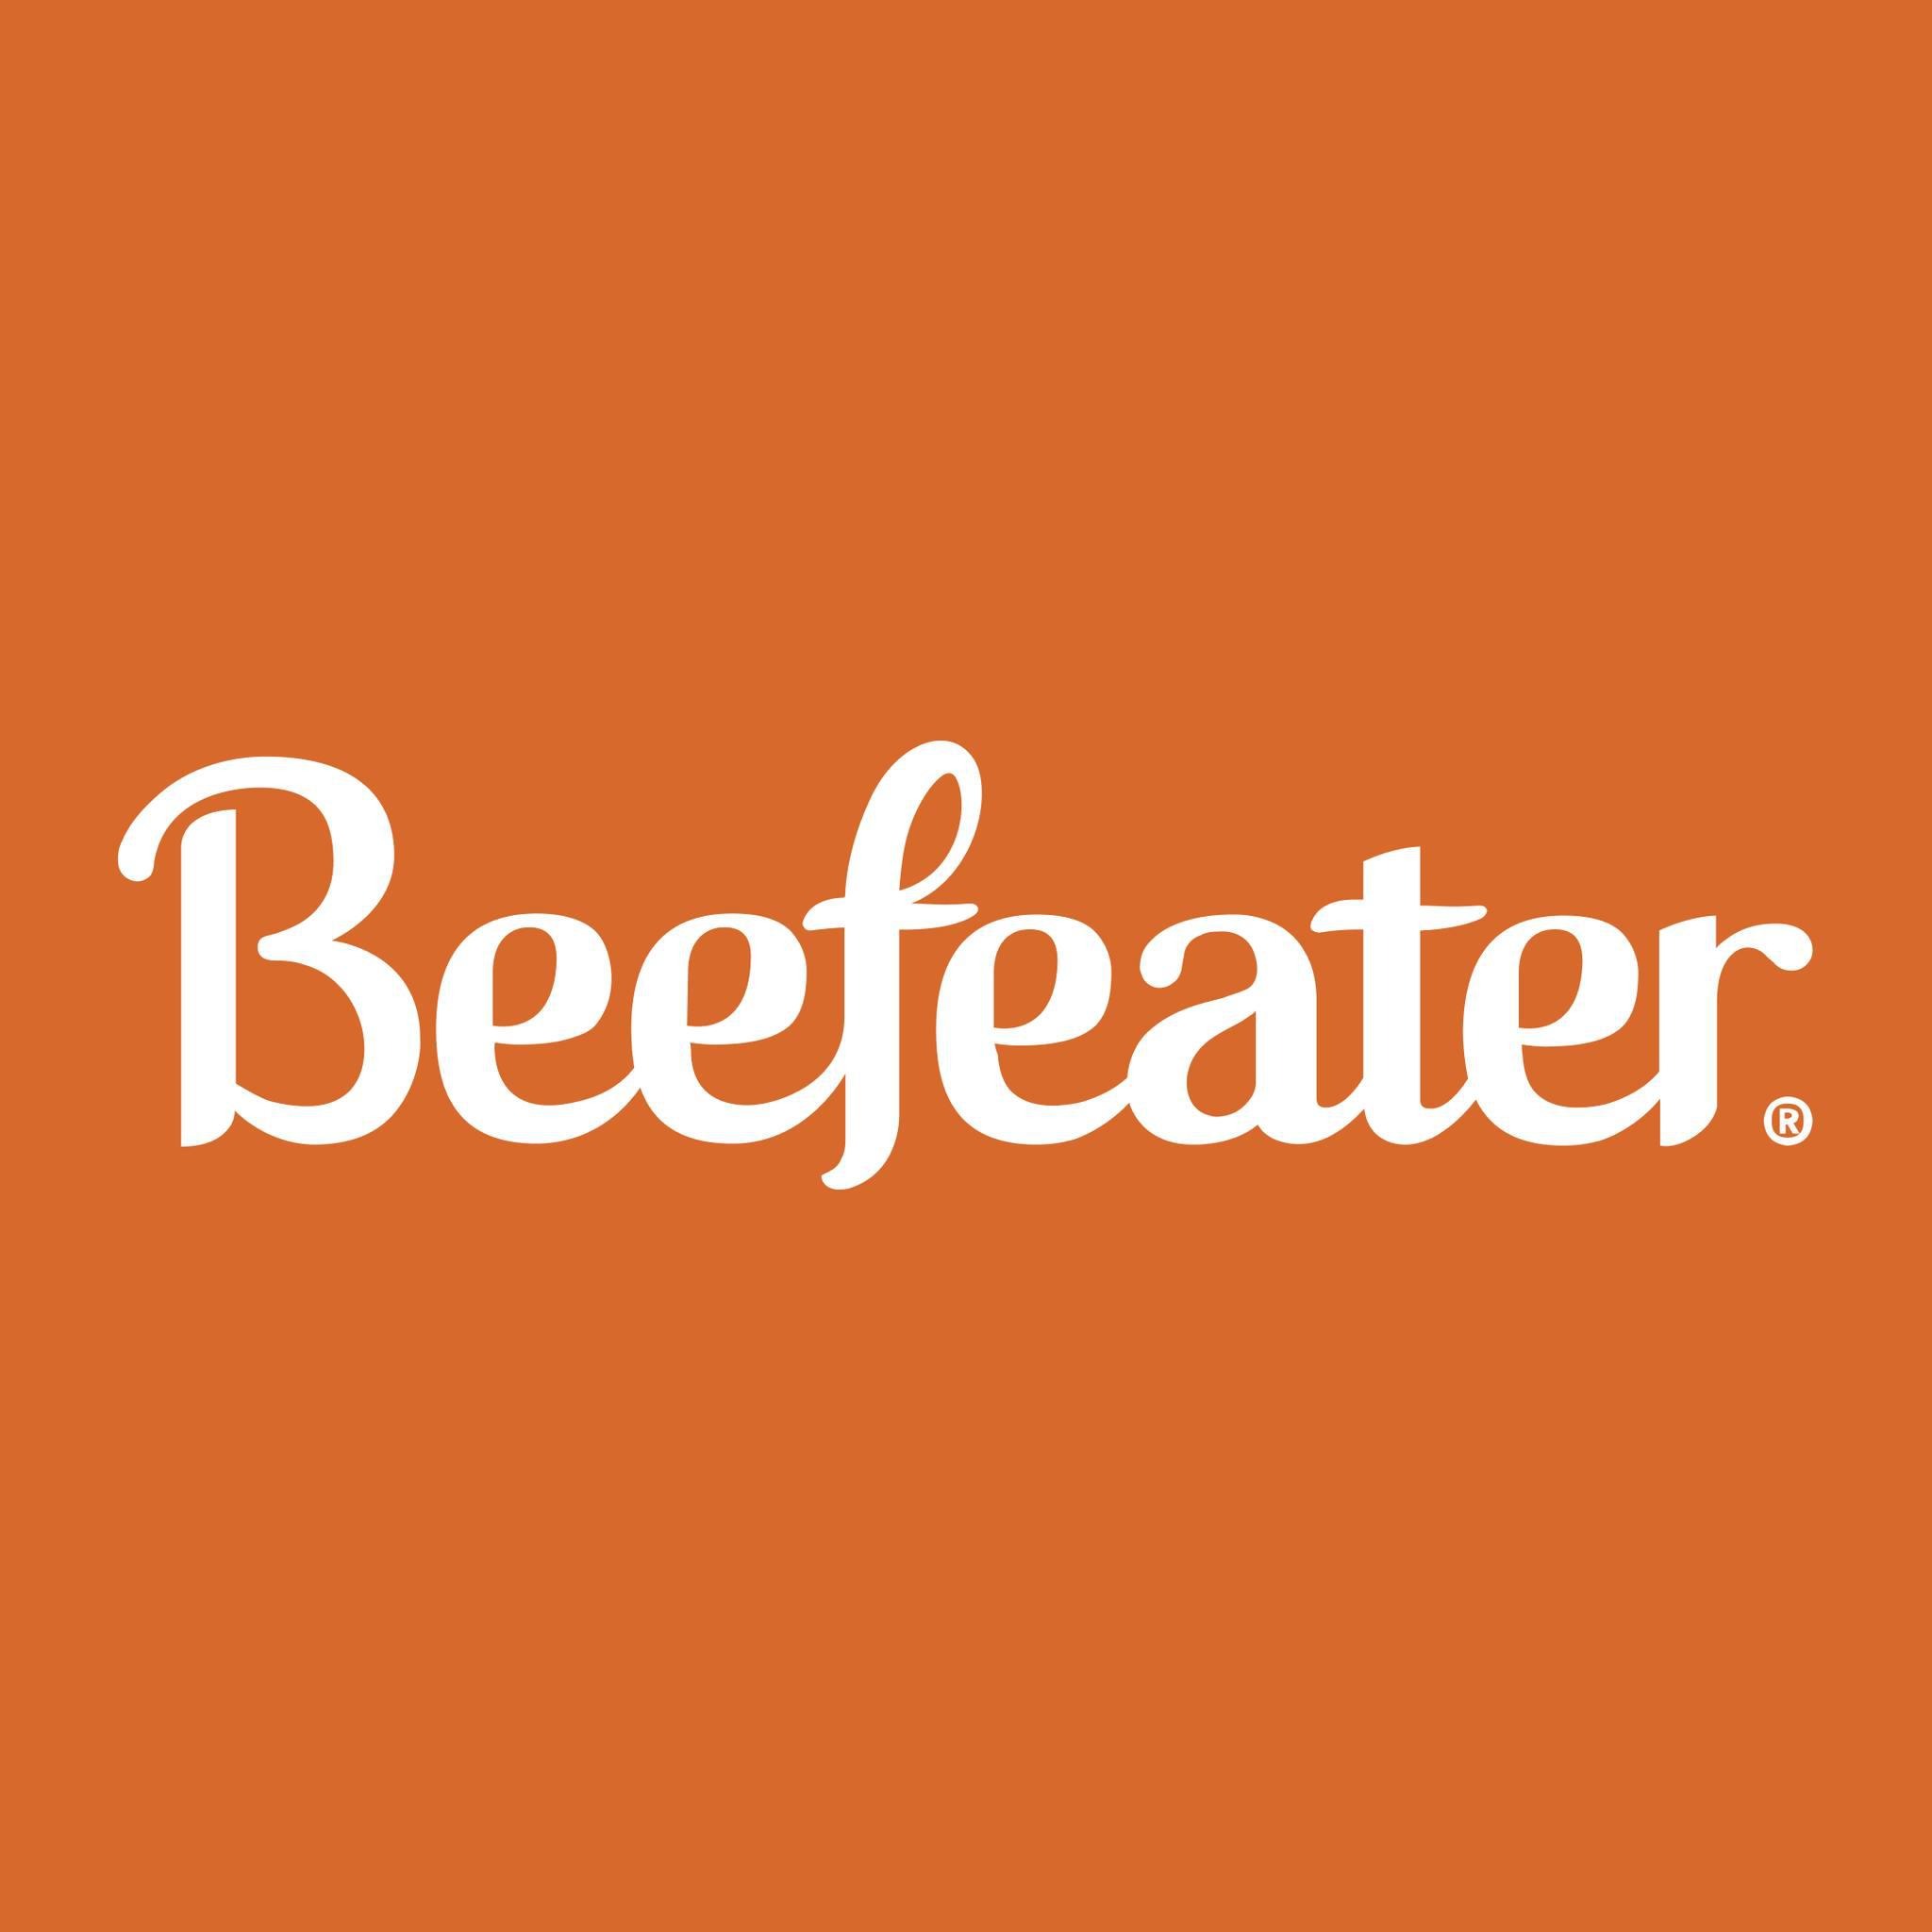 The Applecart Beefeater